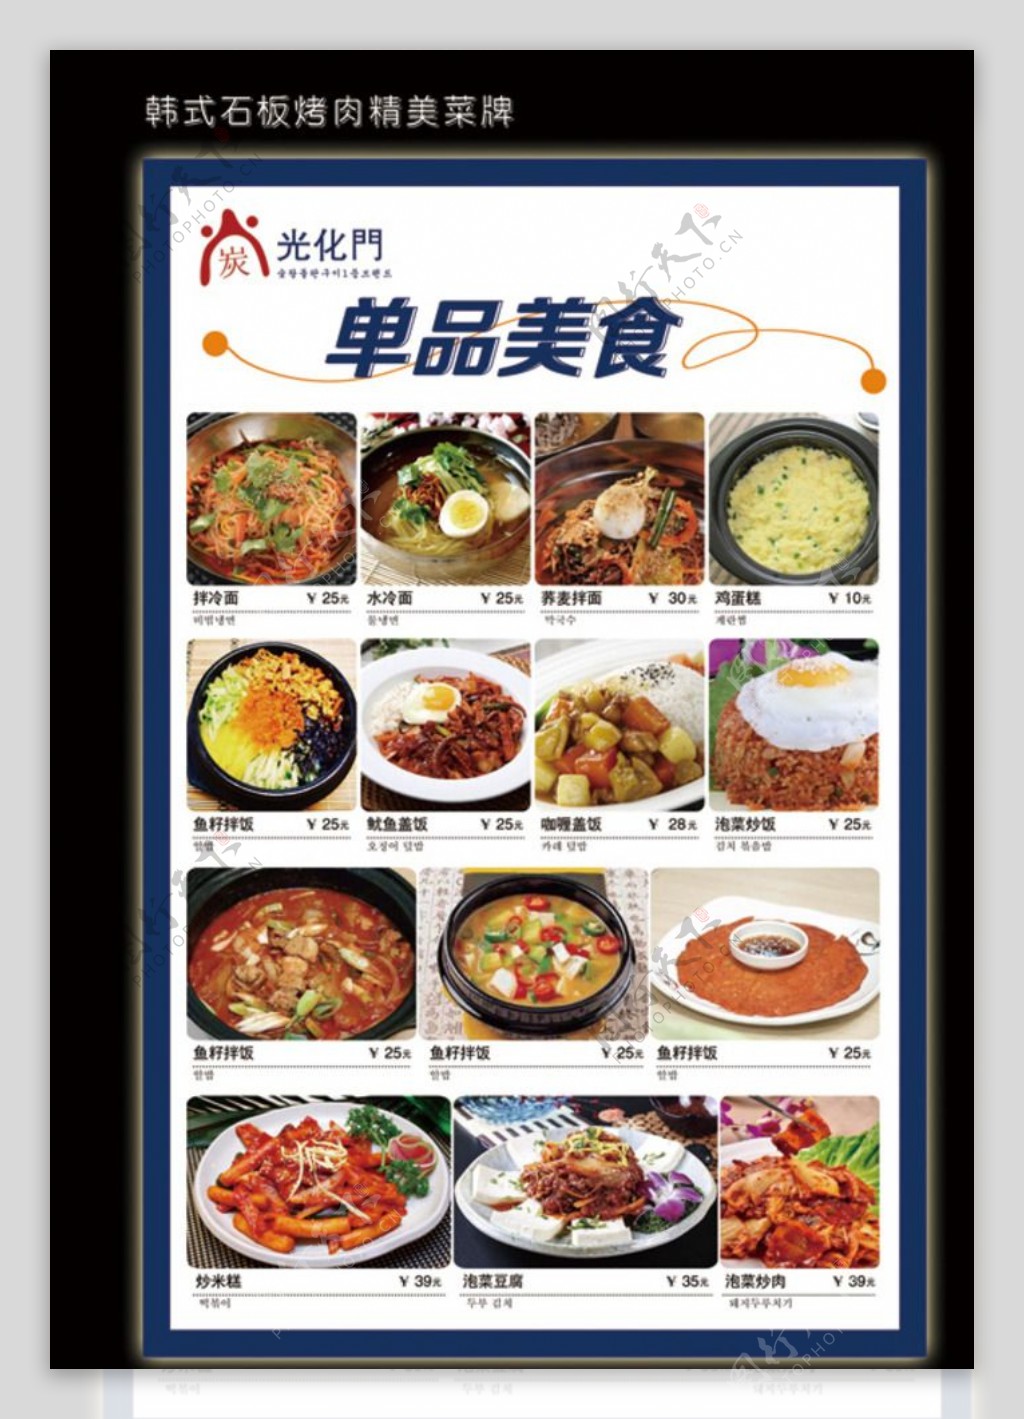 韩国石板烤肉精美菜牌图片